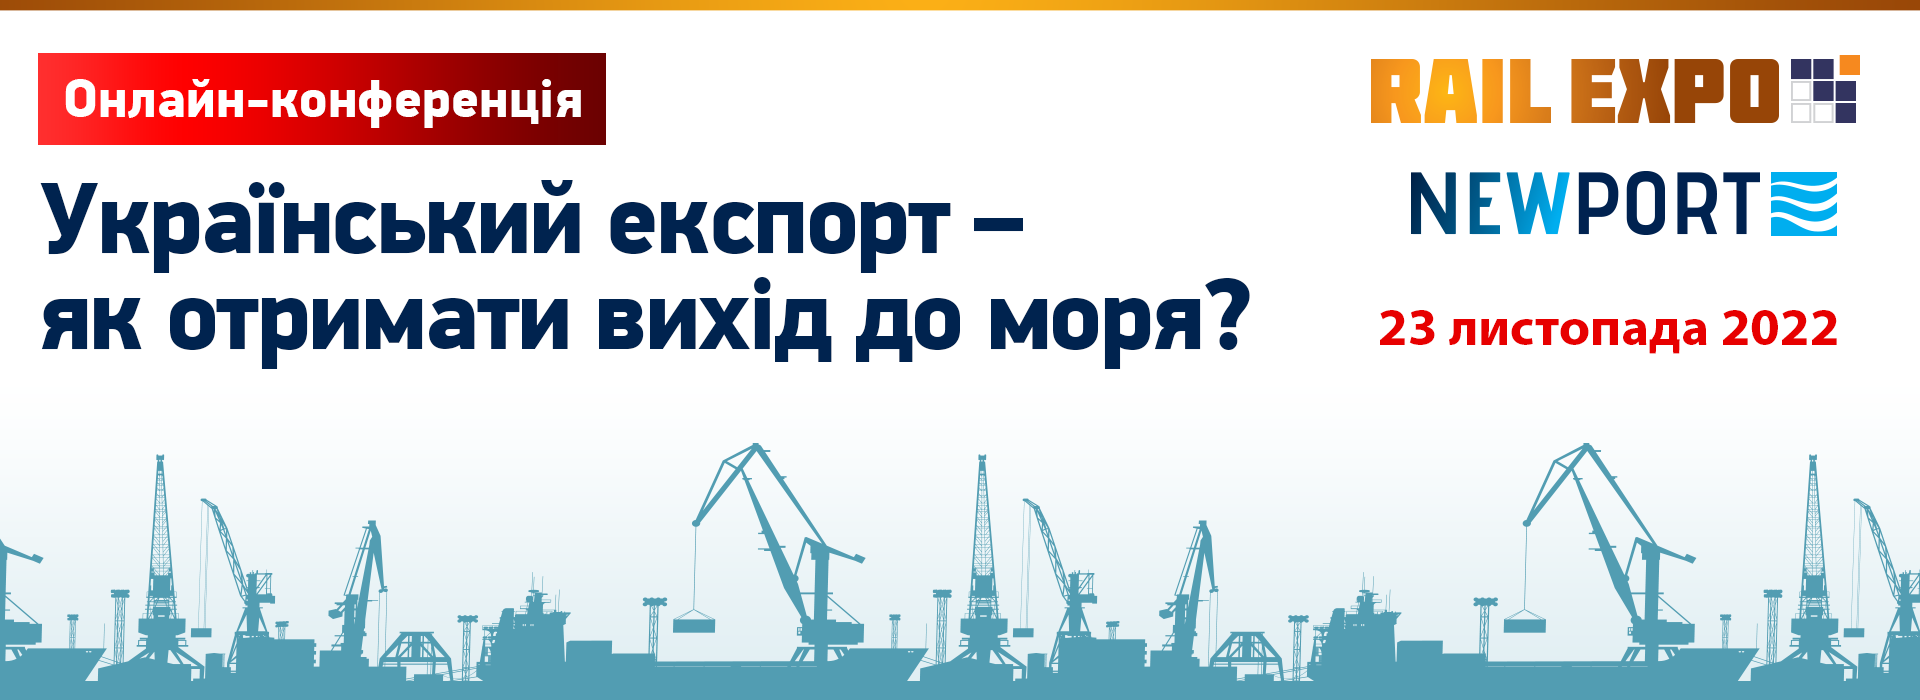 Онлайн-конференція «Український експорт – як отримати вихід до моря?»